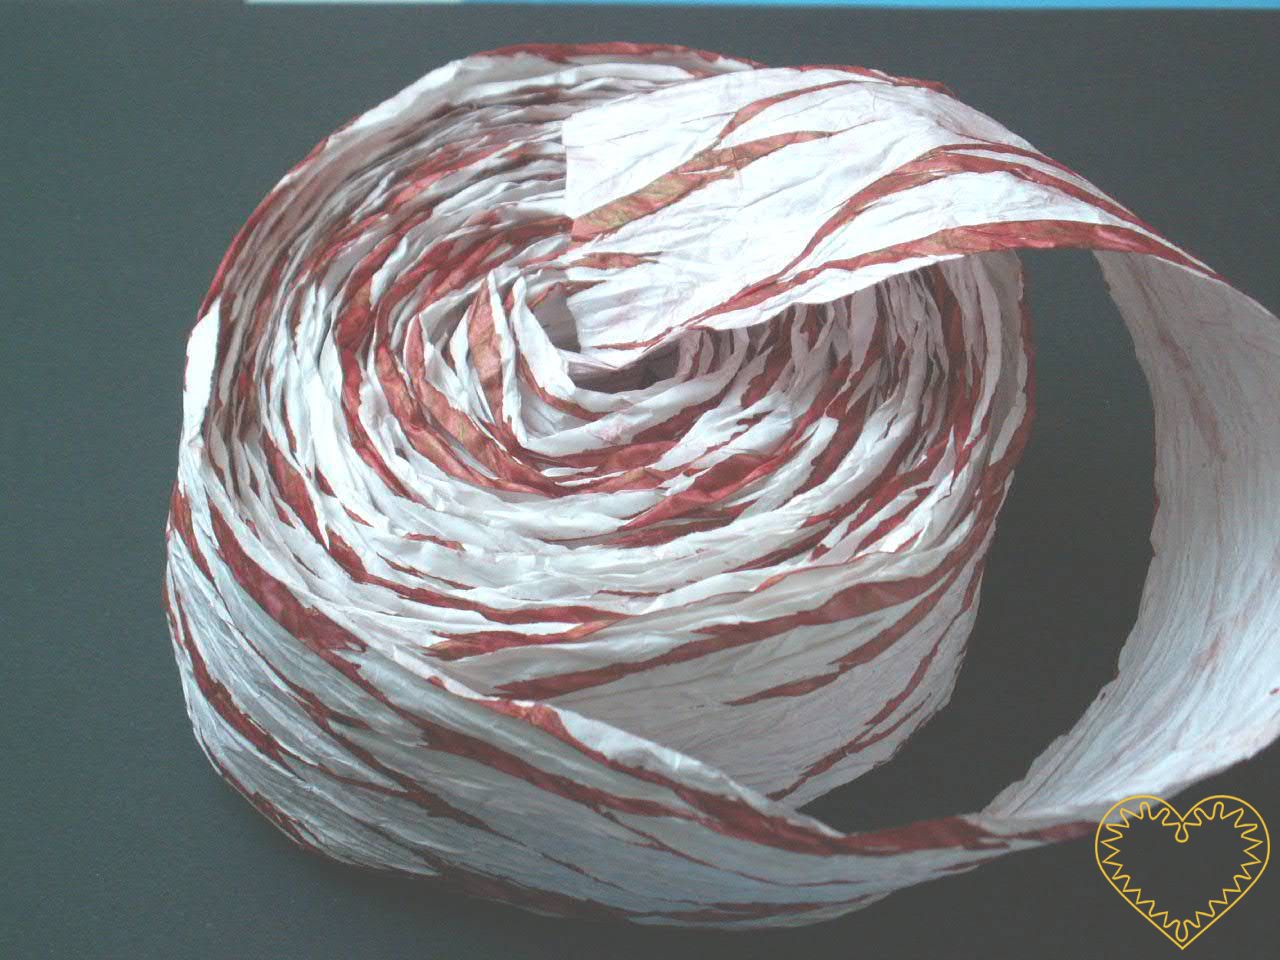 Bílá stuha papírová batikovaná - šíře 7 cm, délka 10 metrů. Krásná do květinových i suchých vazeb. Vytváří se z ní mašle (do vazby se upevní pomocí drátku). Stuhu možno využít i pro další tvoření - např. nastříhat, naskládat jako harmoniku a vytvořit